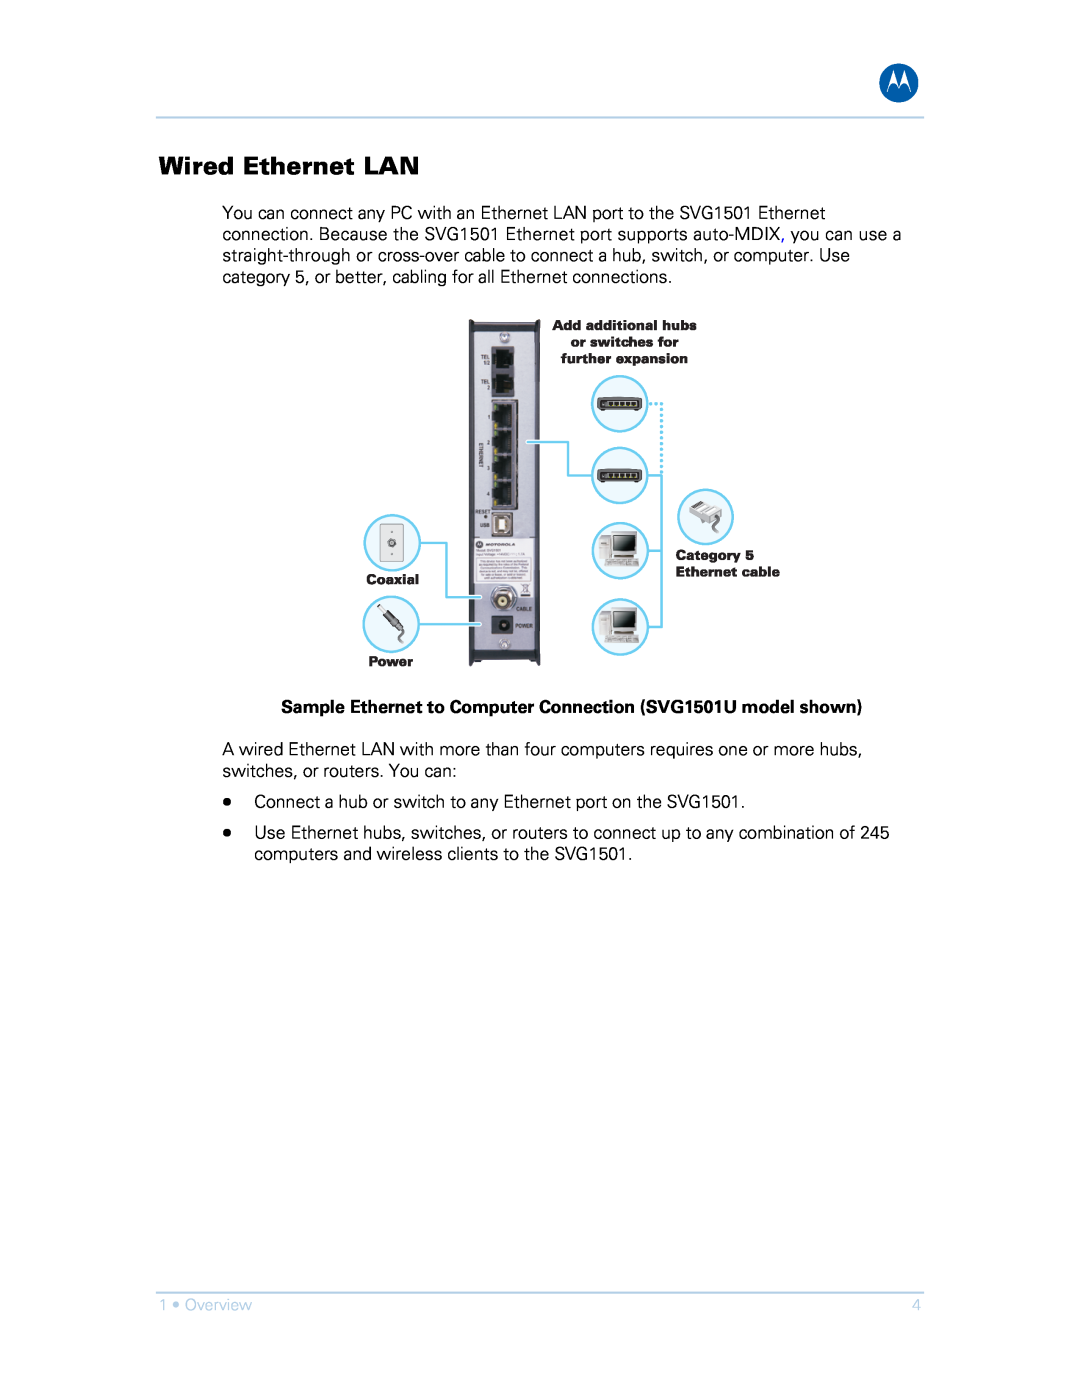 Motorola SVG1501UE, SVG1501E manual Wired Ethernet LAN, Sample Ethernet to Computer Connection SVG1501U model shown 